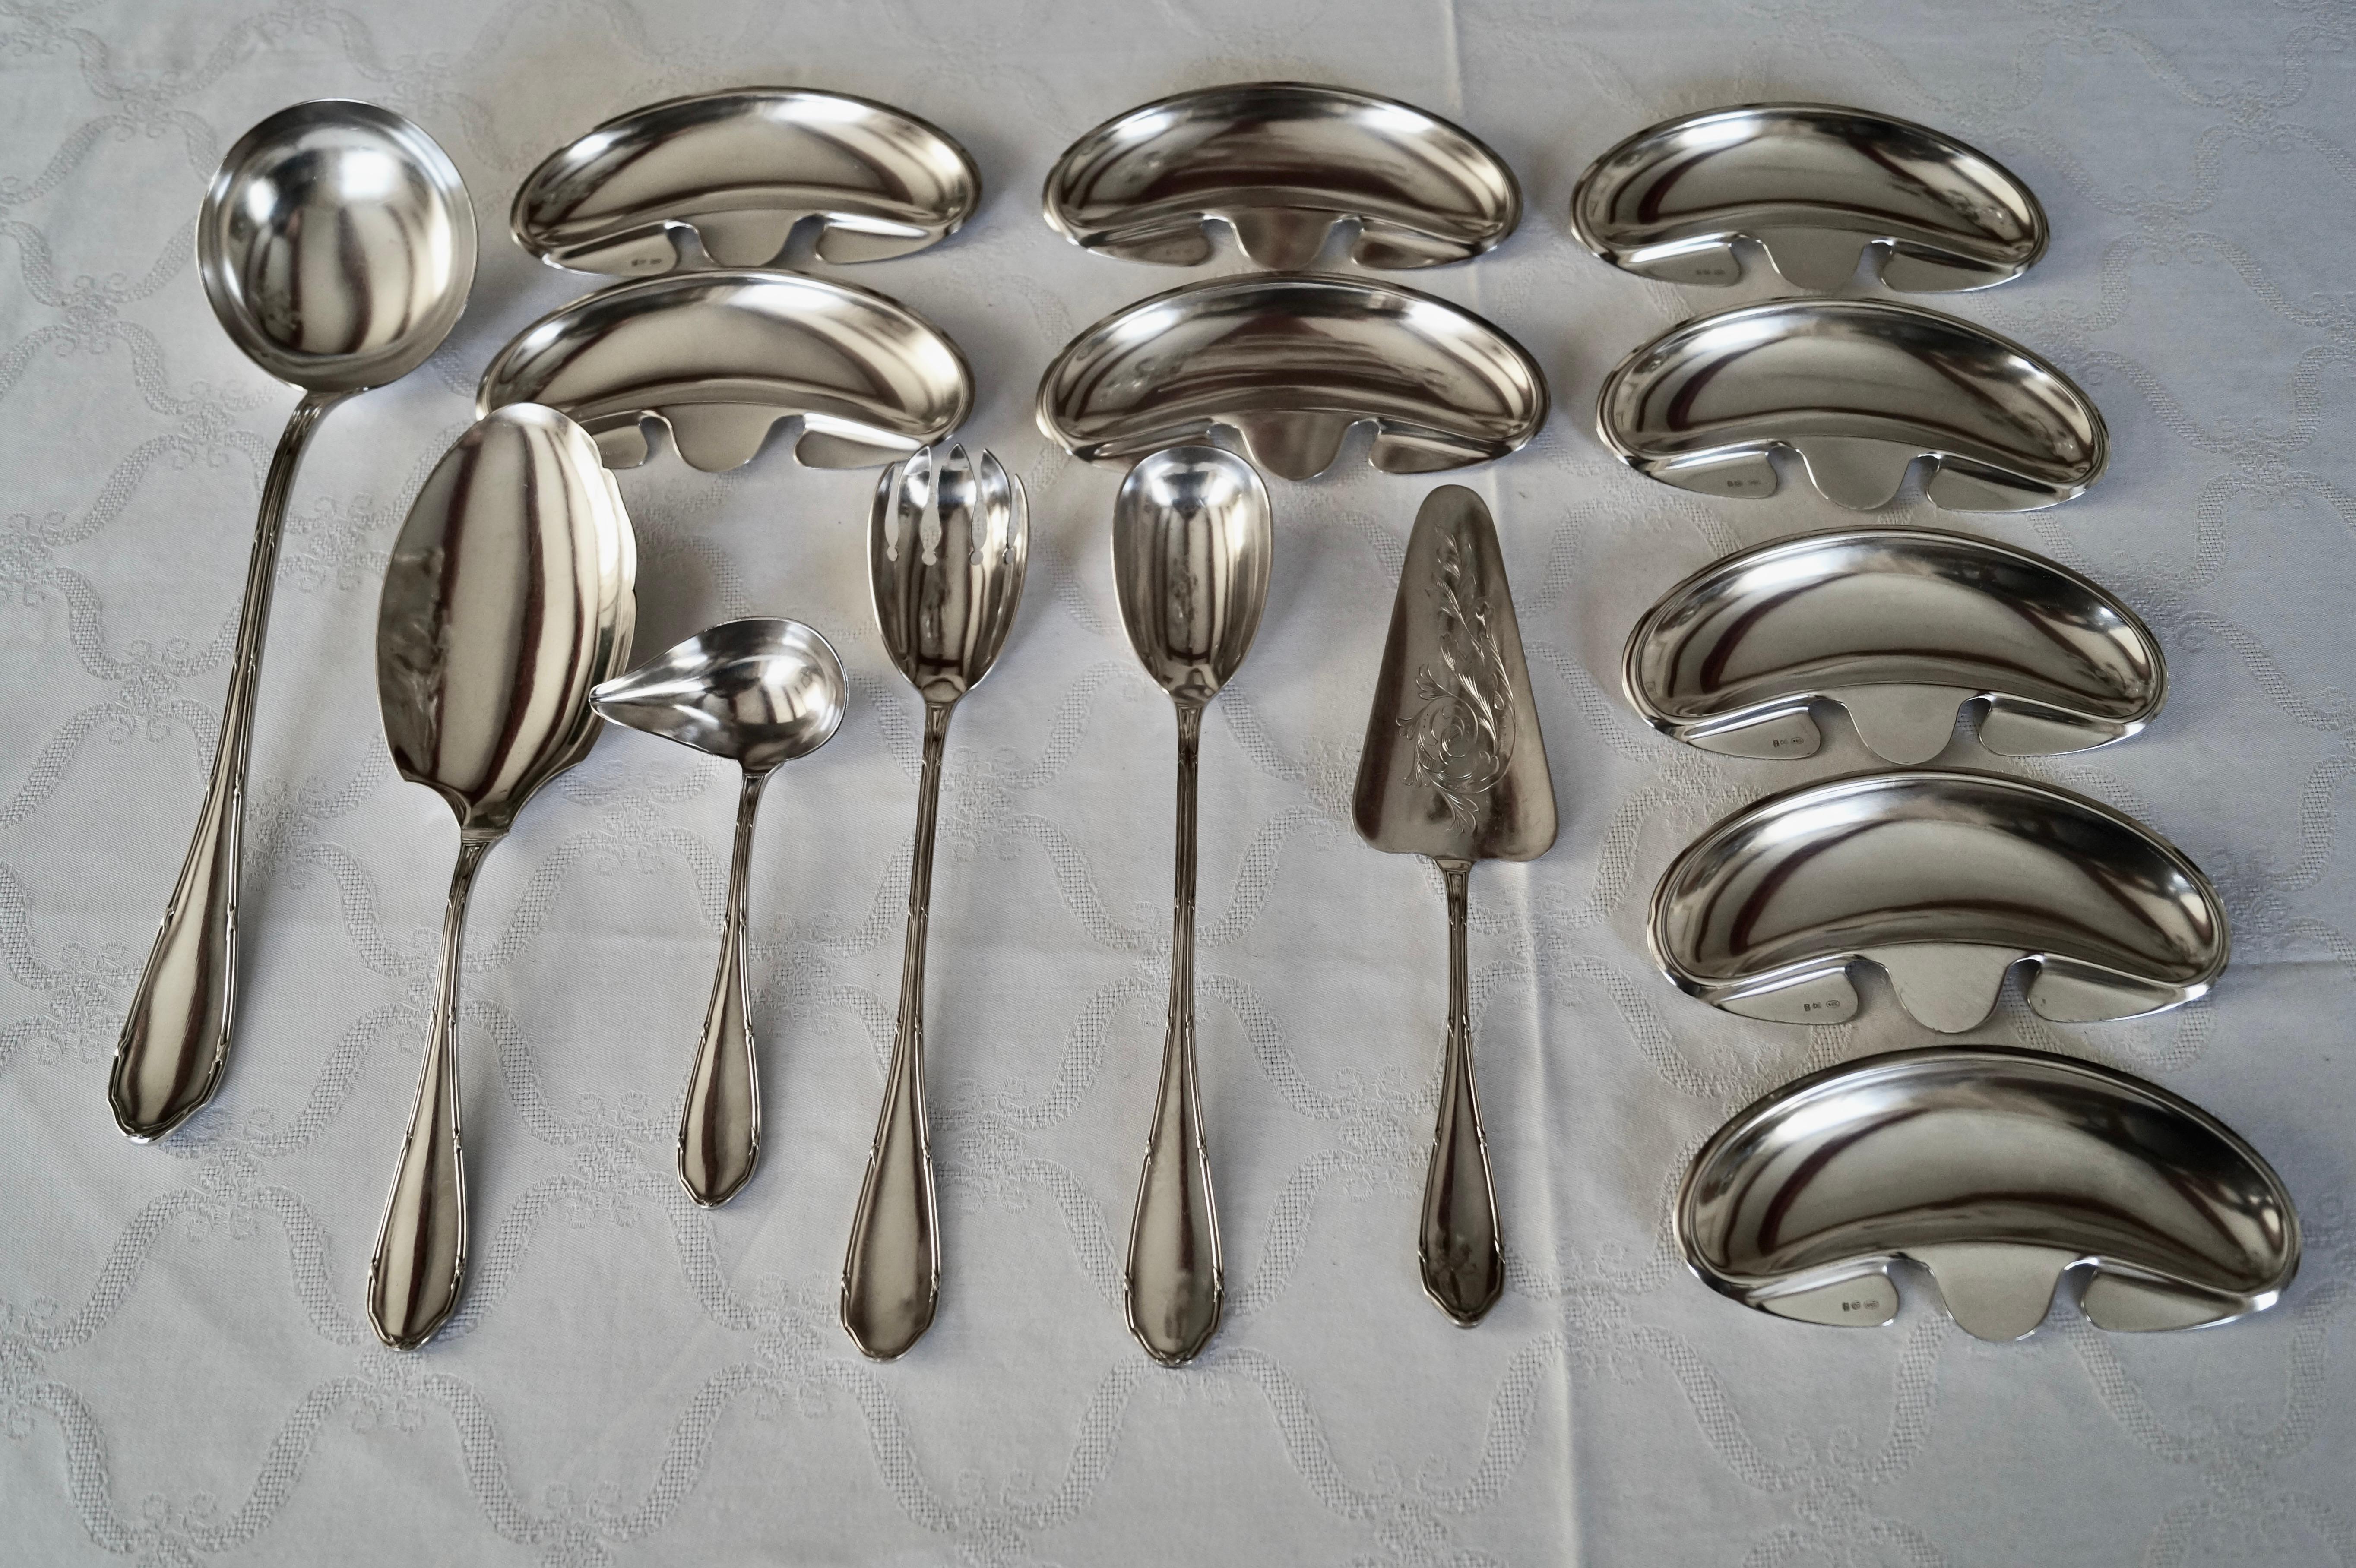 Très vaste ensemble de couverts anciens en métal argenté de la marque Argental. Cette forme simple (bordure avec bande transversale) permet de l'associer à une belle vaisselle, qu'elle soit simple ou richement décorée.

Argental peut être comparé